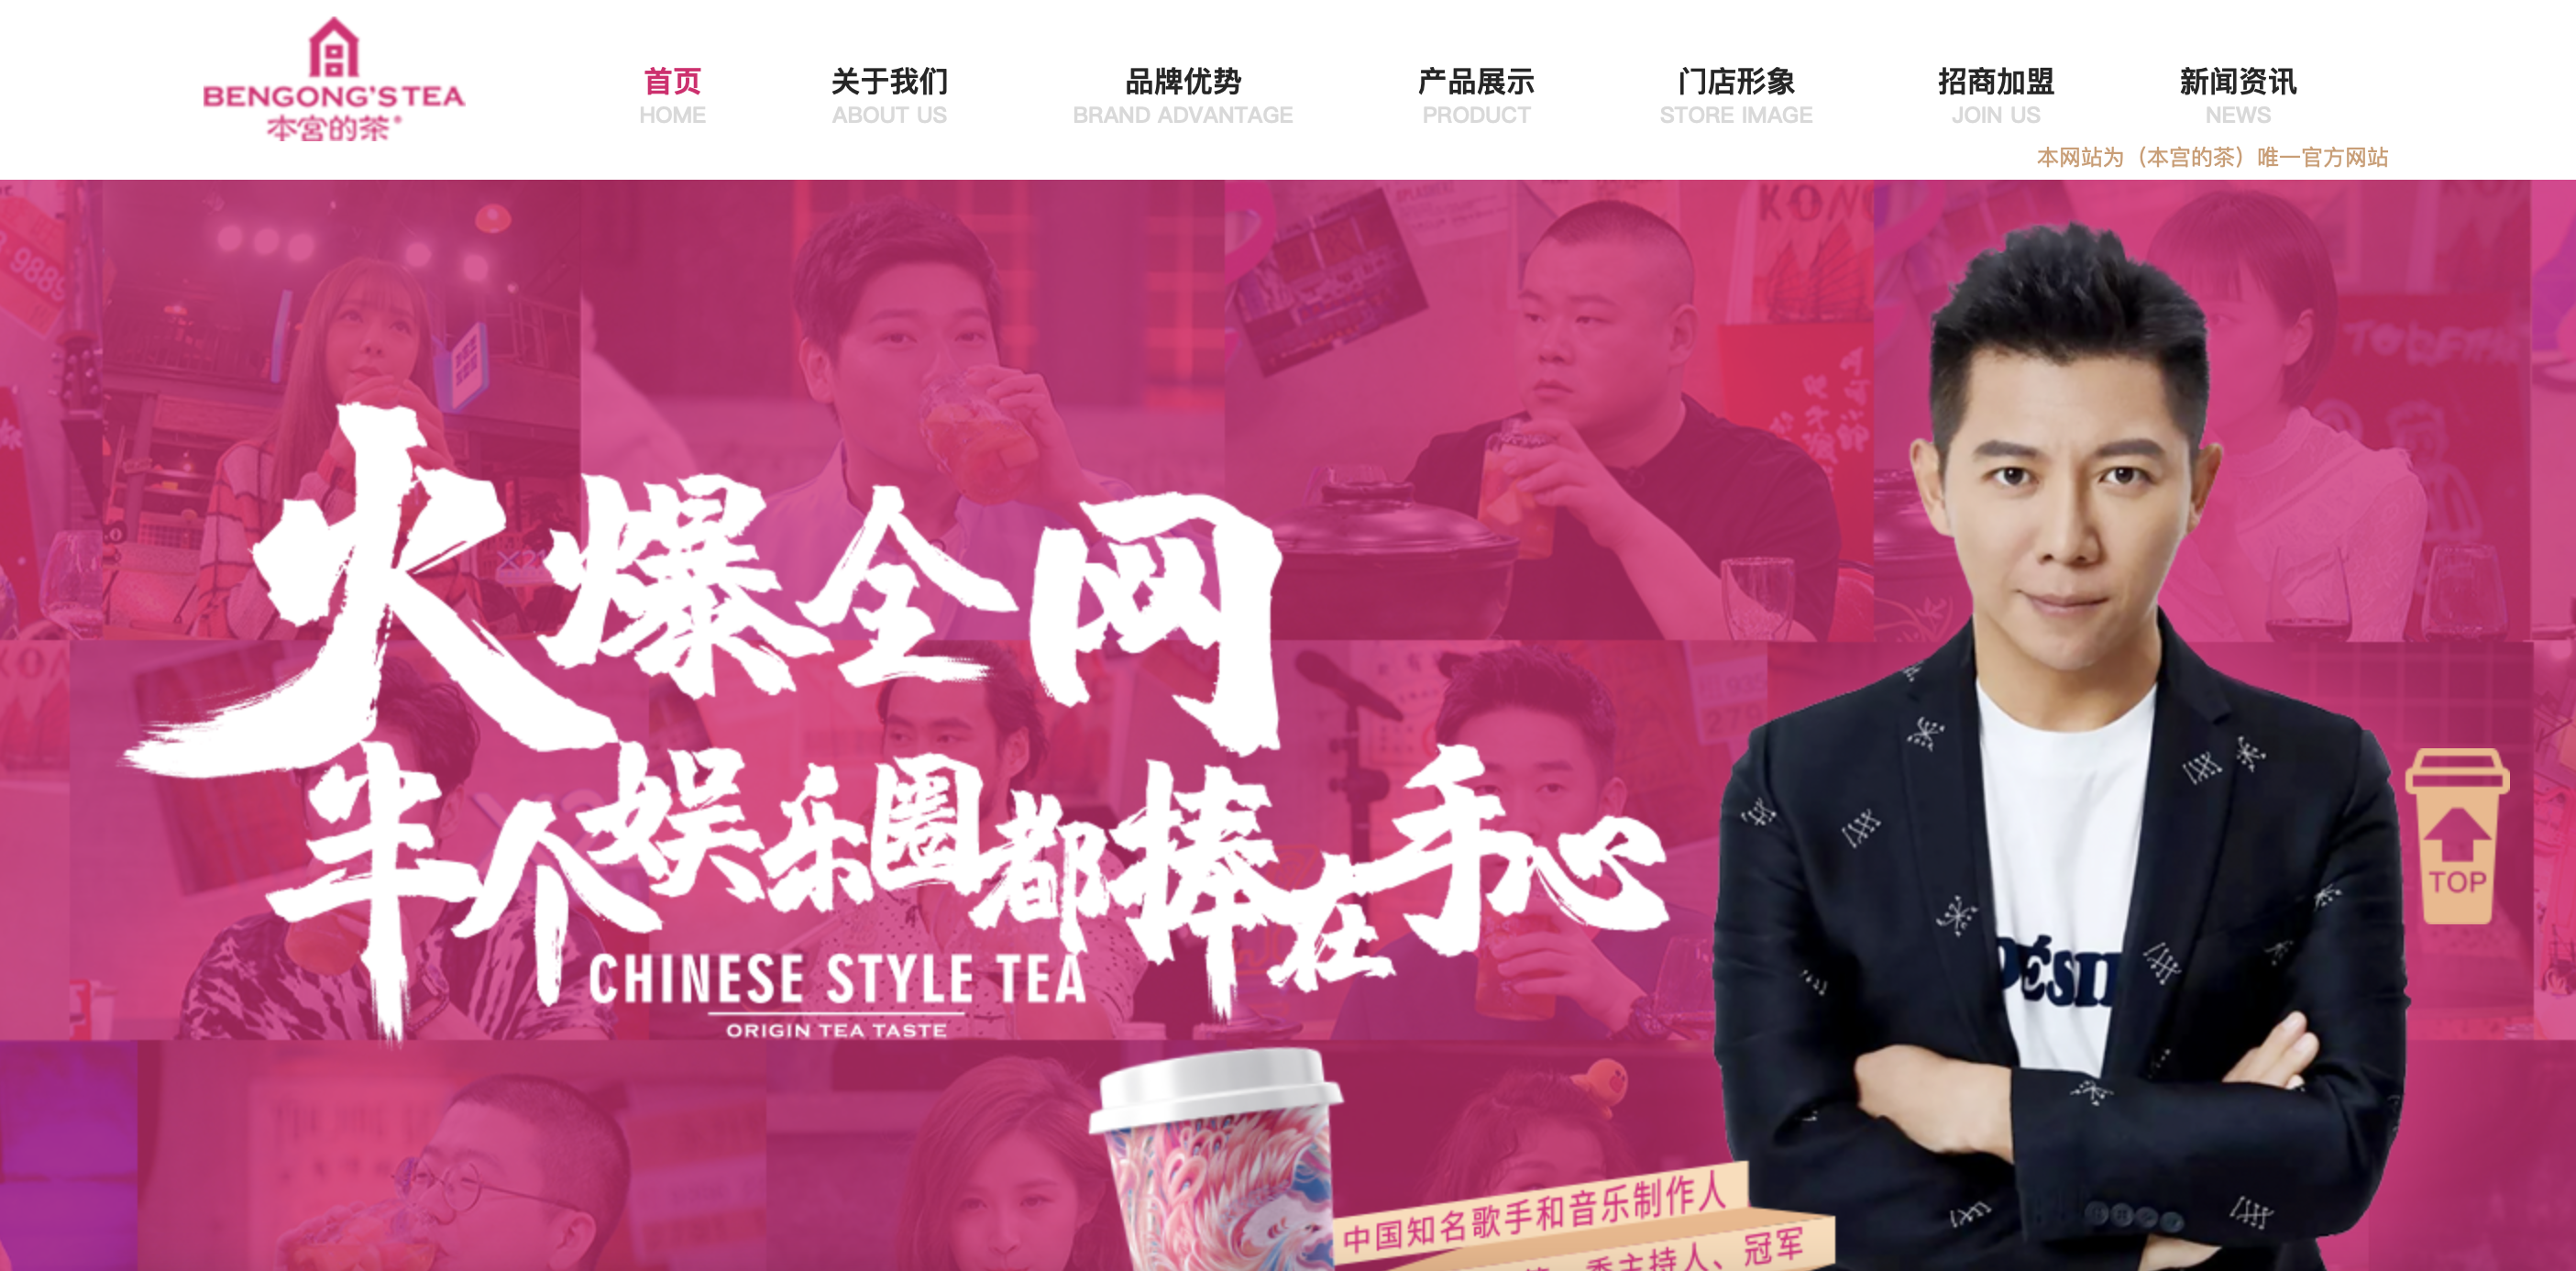 继5月偷税被罚款,本宫的茶又吃官司!歌手胡海泉的加盟项目是割韭菜?